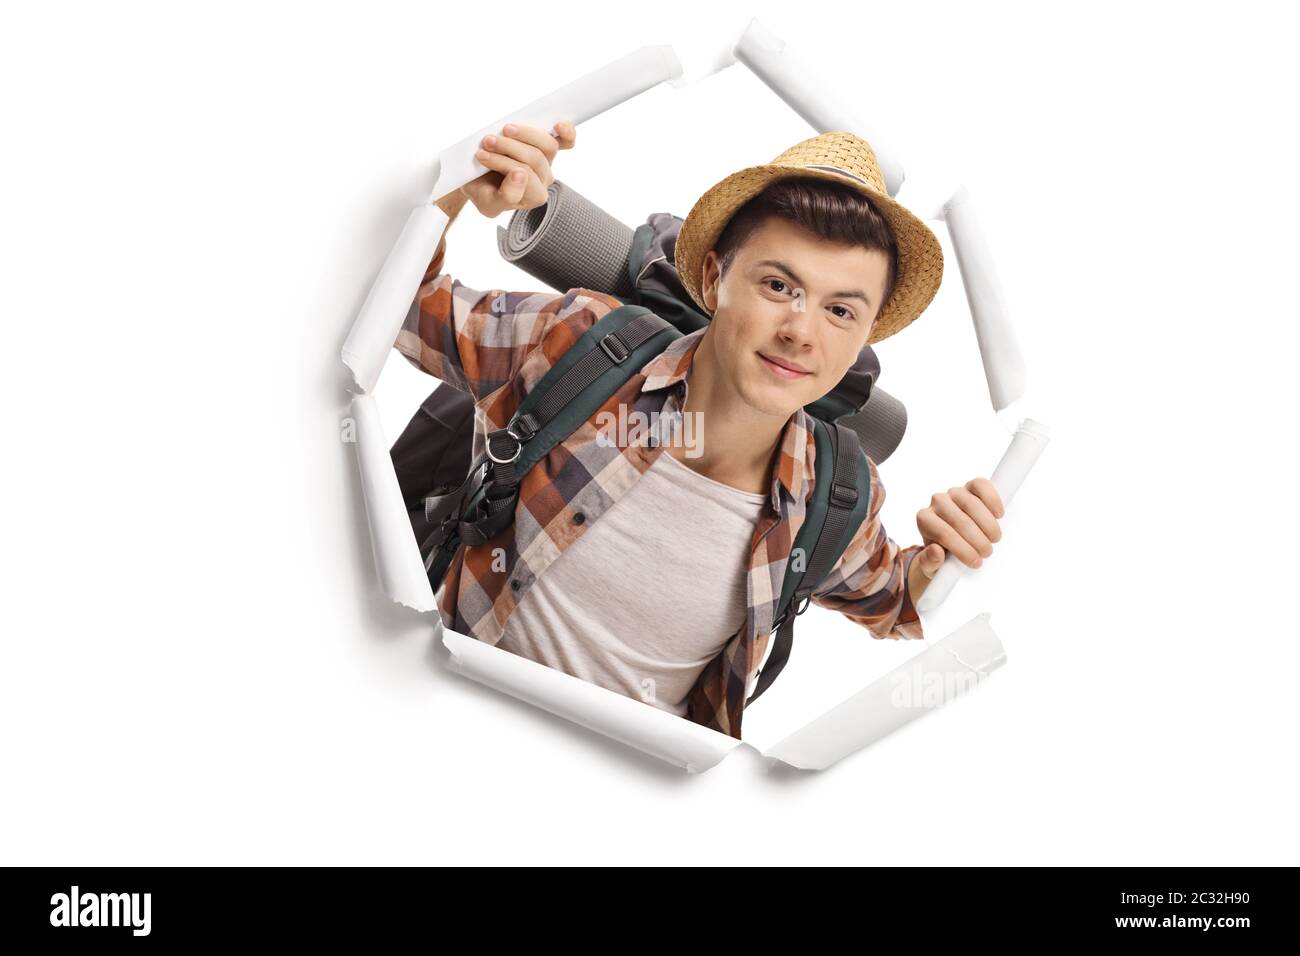 Jeune adolescent routard touriste peeking à travers un trou de papier isolé sur fond blanc Banque D'Images